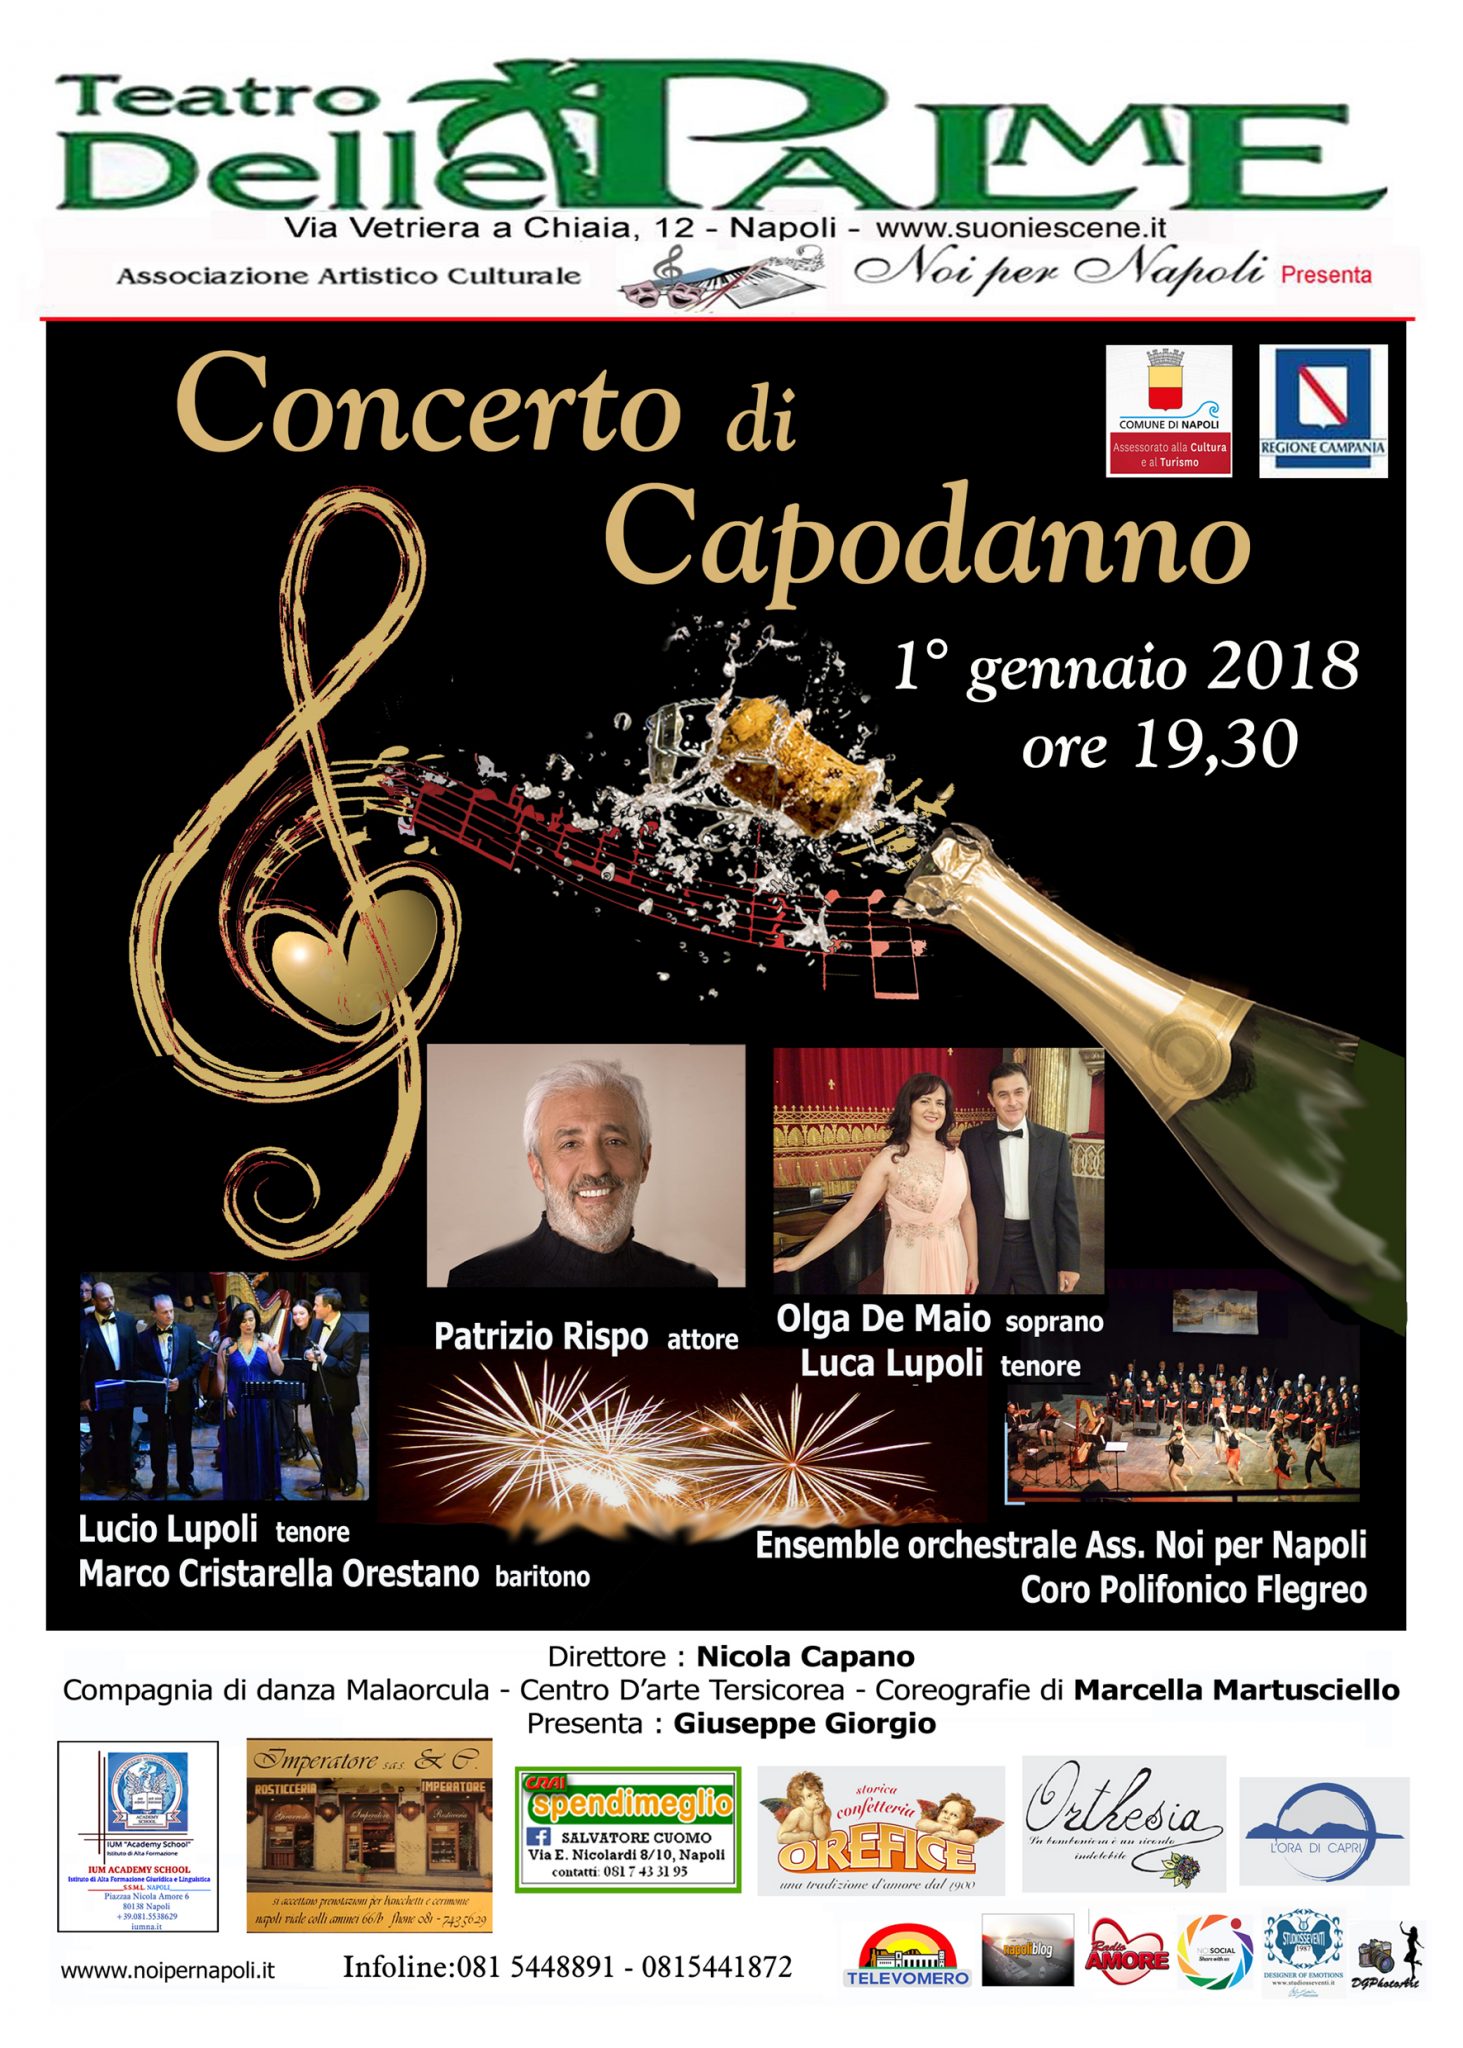 Concerto di Capodanno al Teatro delle Palme di Napoli con Patrizio Rispo